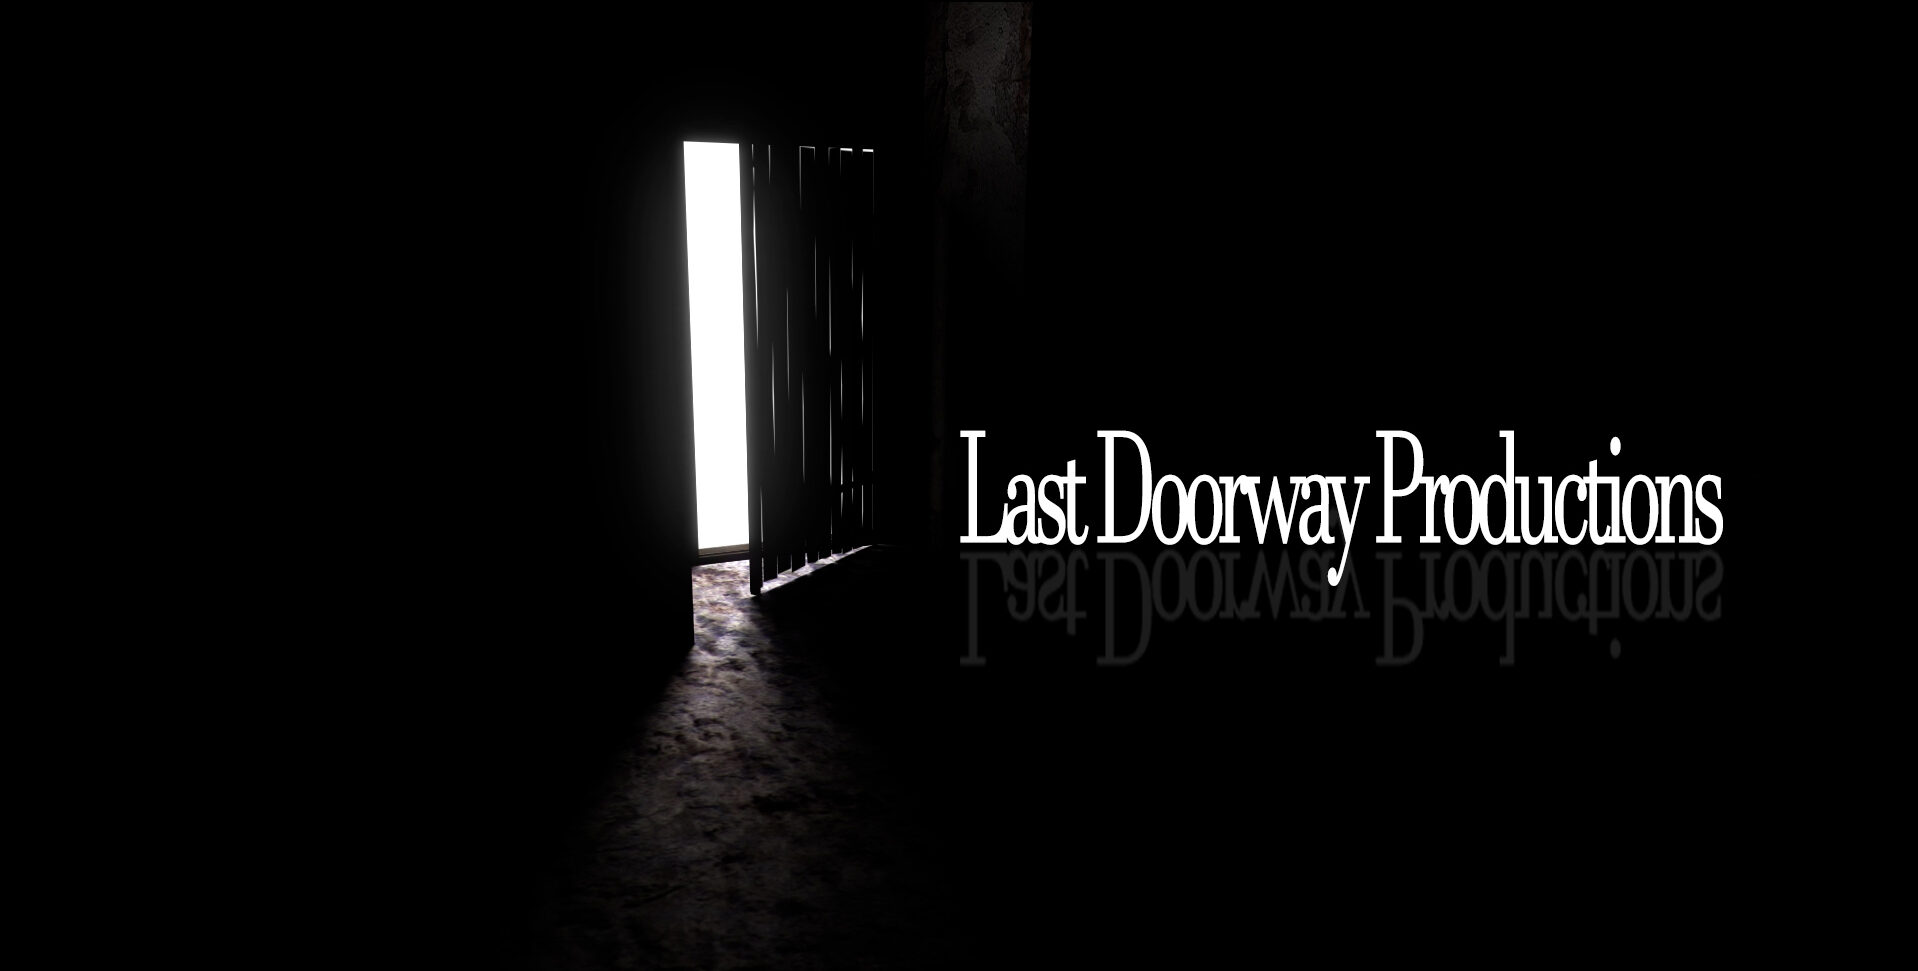 Last Doorway Productions